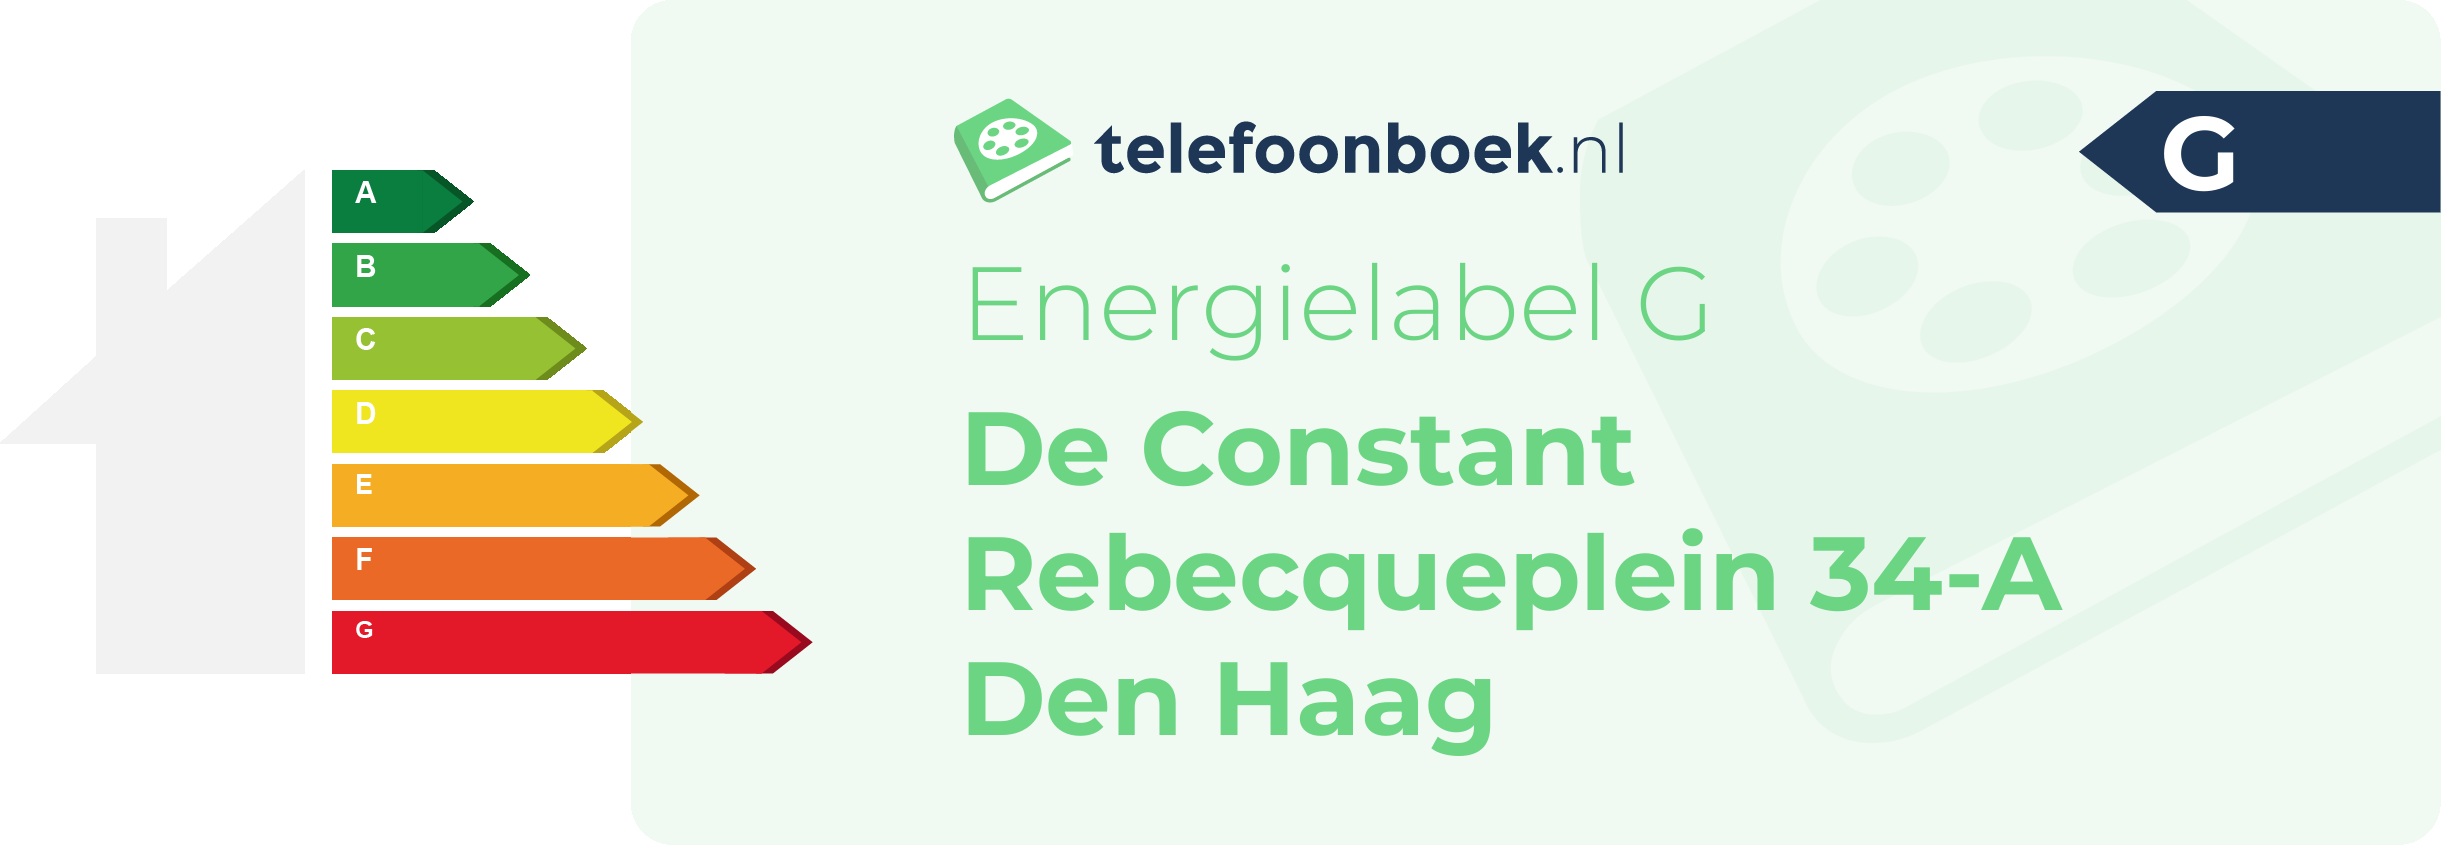 Energielabel De Constant Rebecqueplein 34-A Den Haag